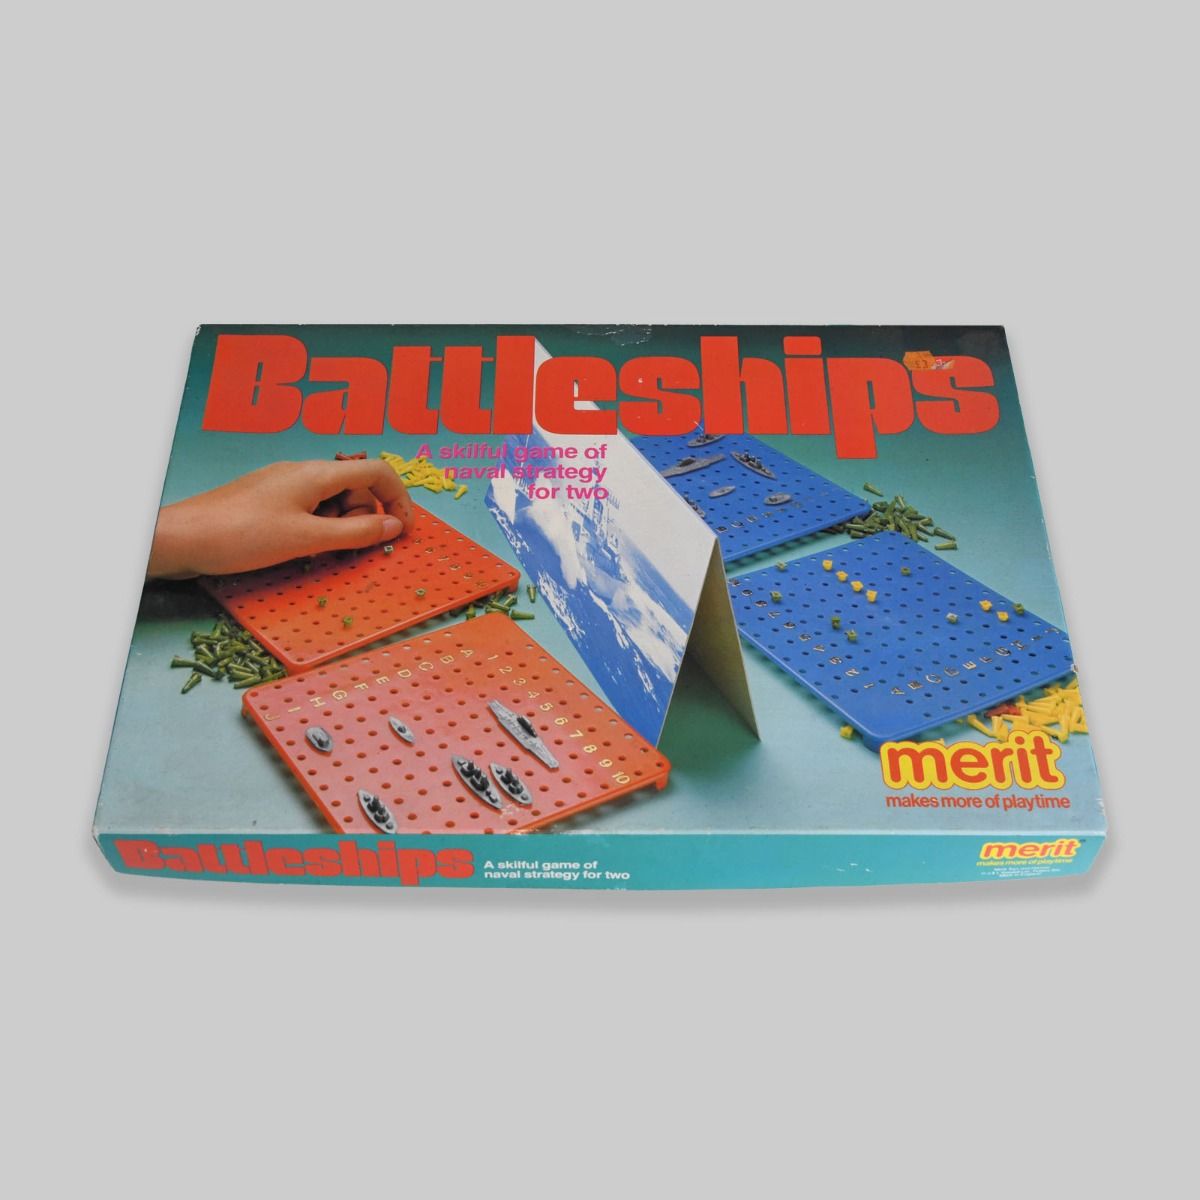 'Battleships' 1960s Board Game